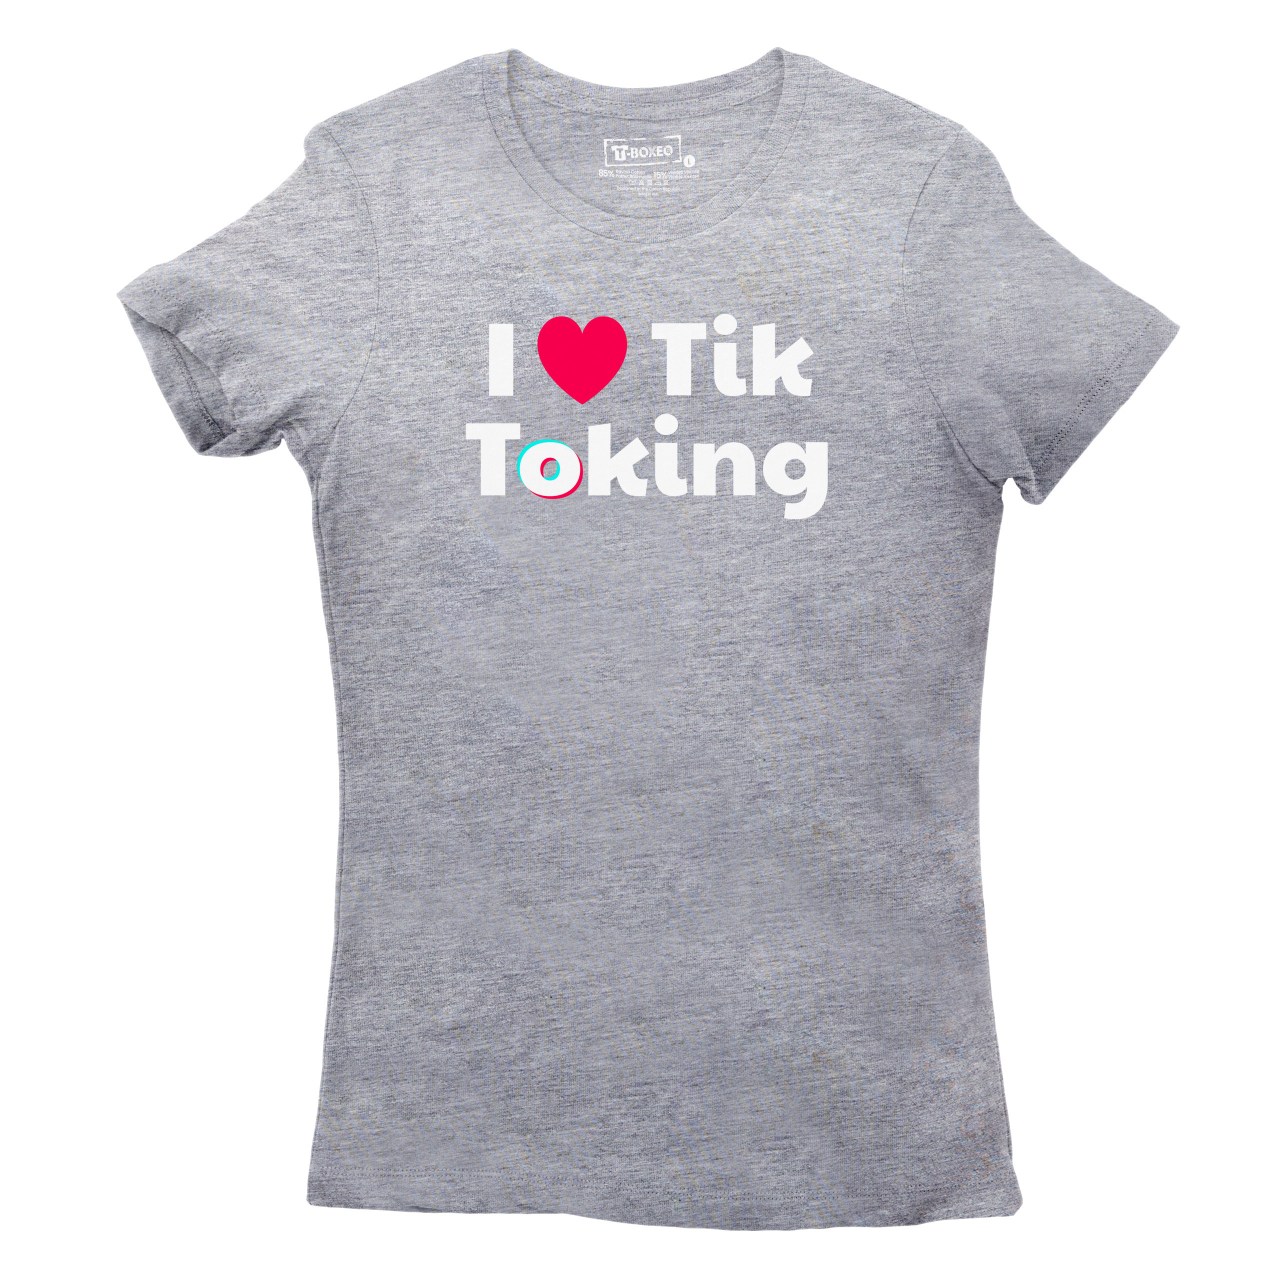 Dámské tričko s potiskem “I love Tiktoking”